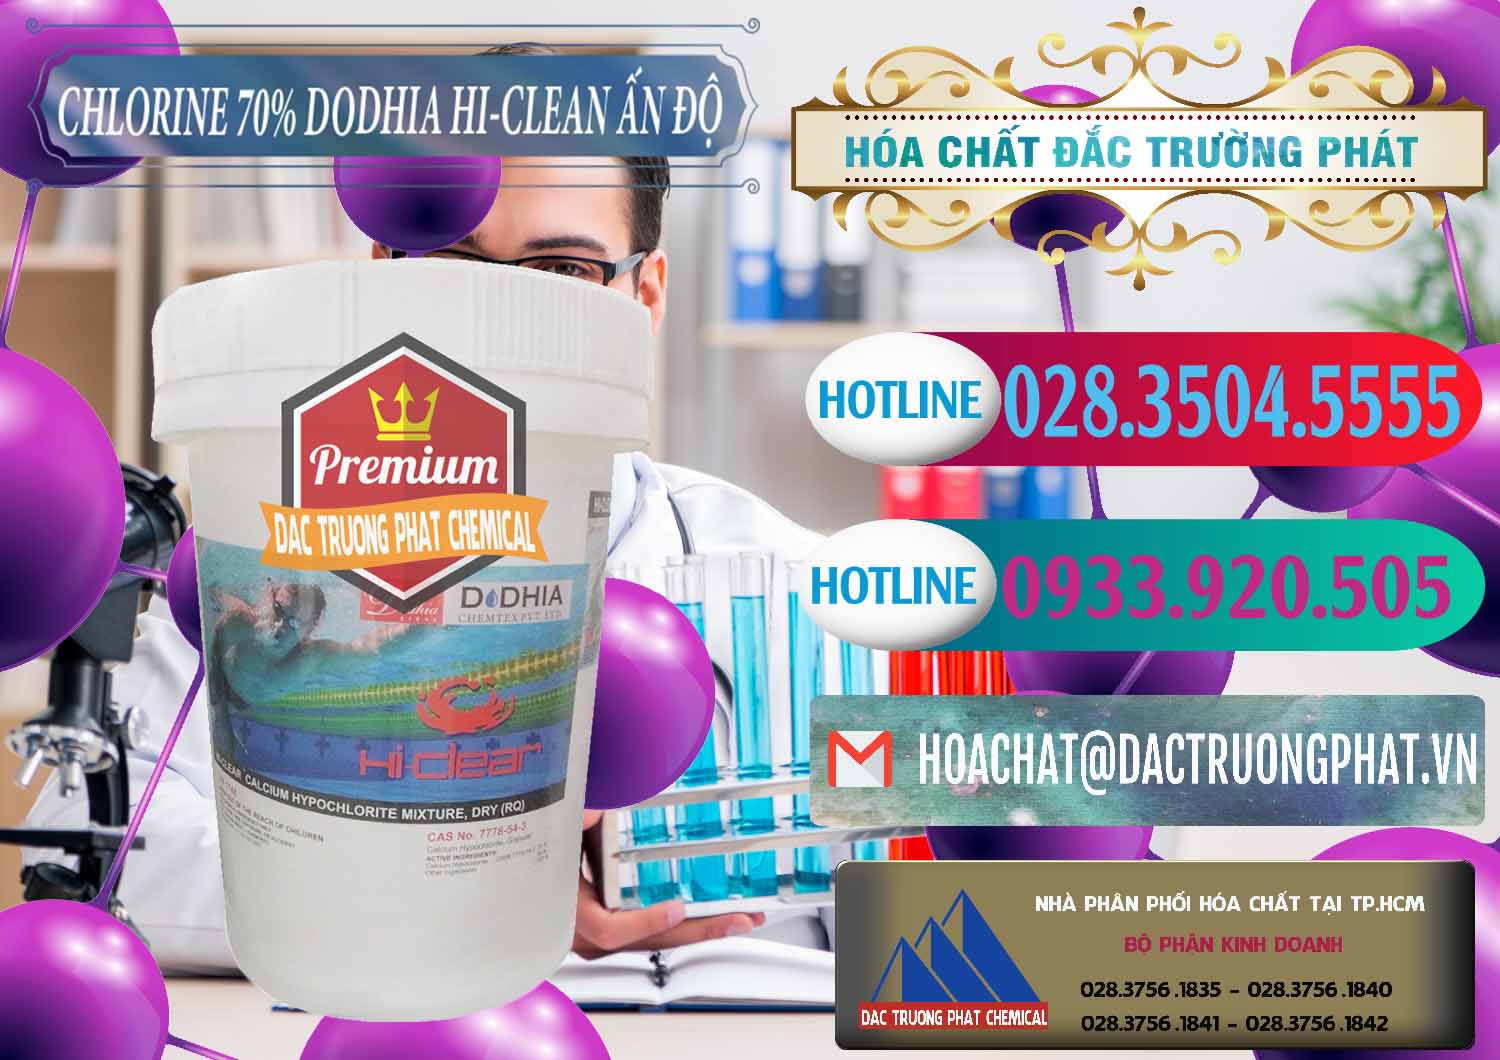 Chuyên kinh doanh _ bán Chlorine – Clorin 70% Dodhia Hi-Clean Ấn Độ India - 0214 - Chuyên cung cấp và phân phối hóa chất tại TP.HCM - truongphat.vn